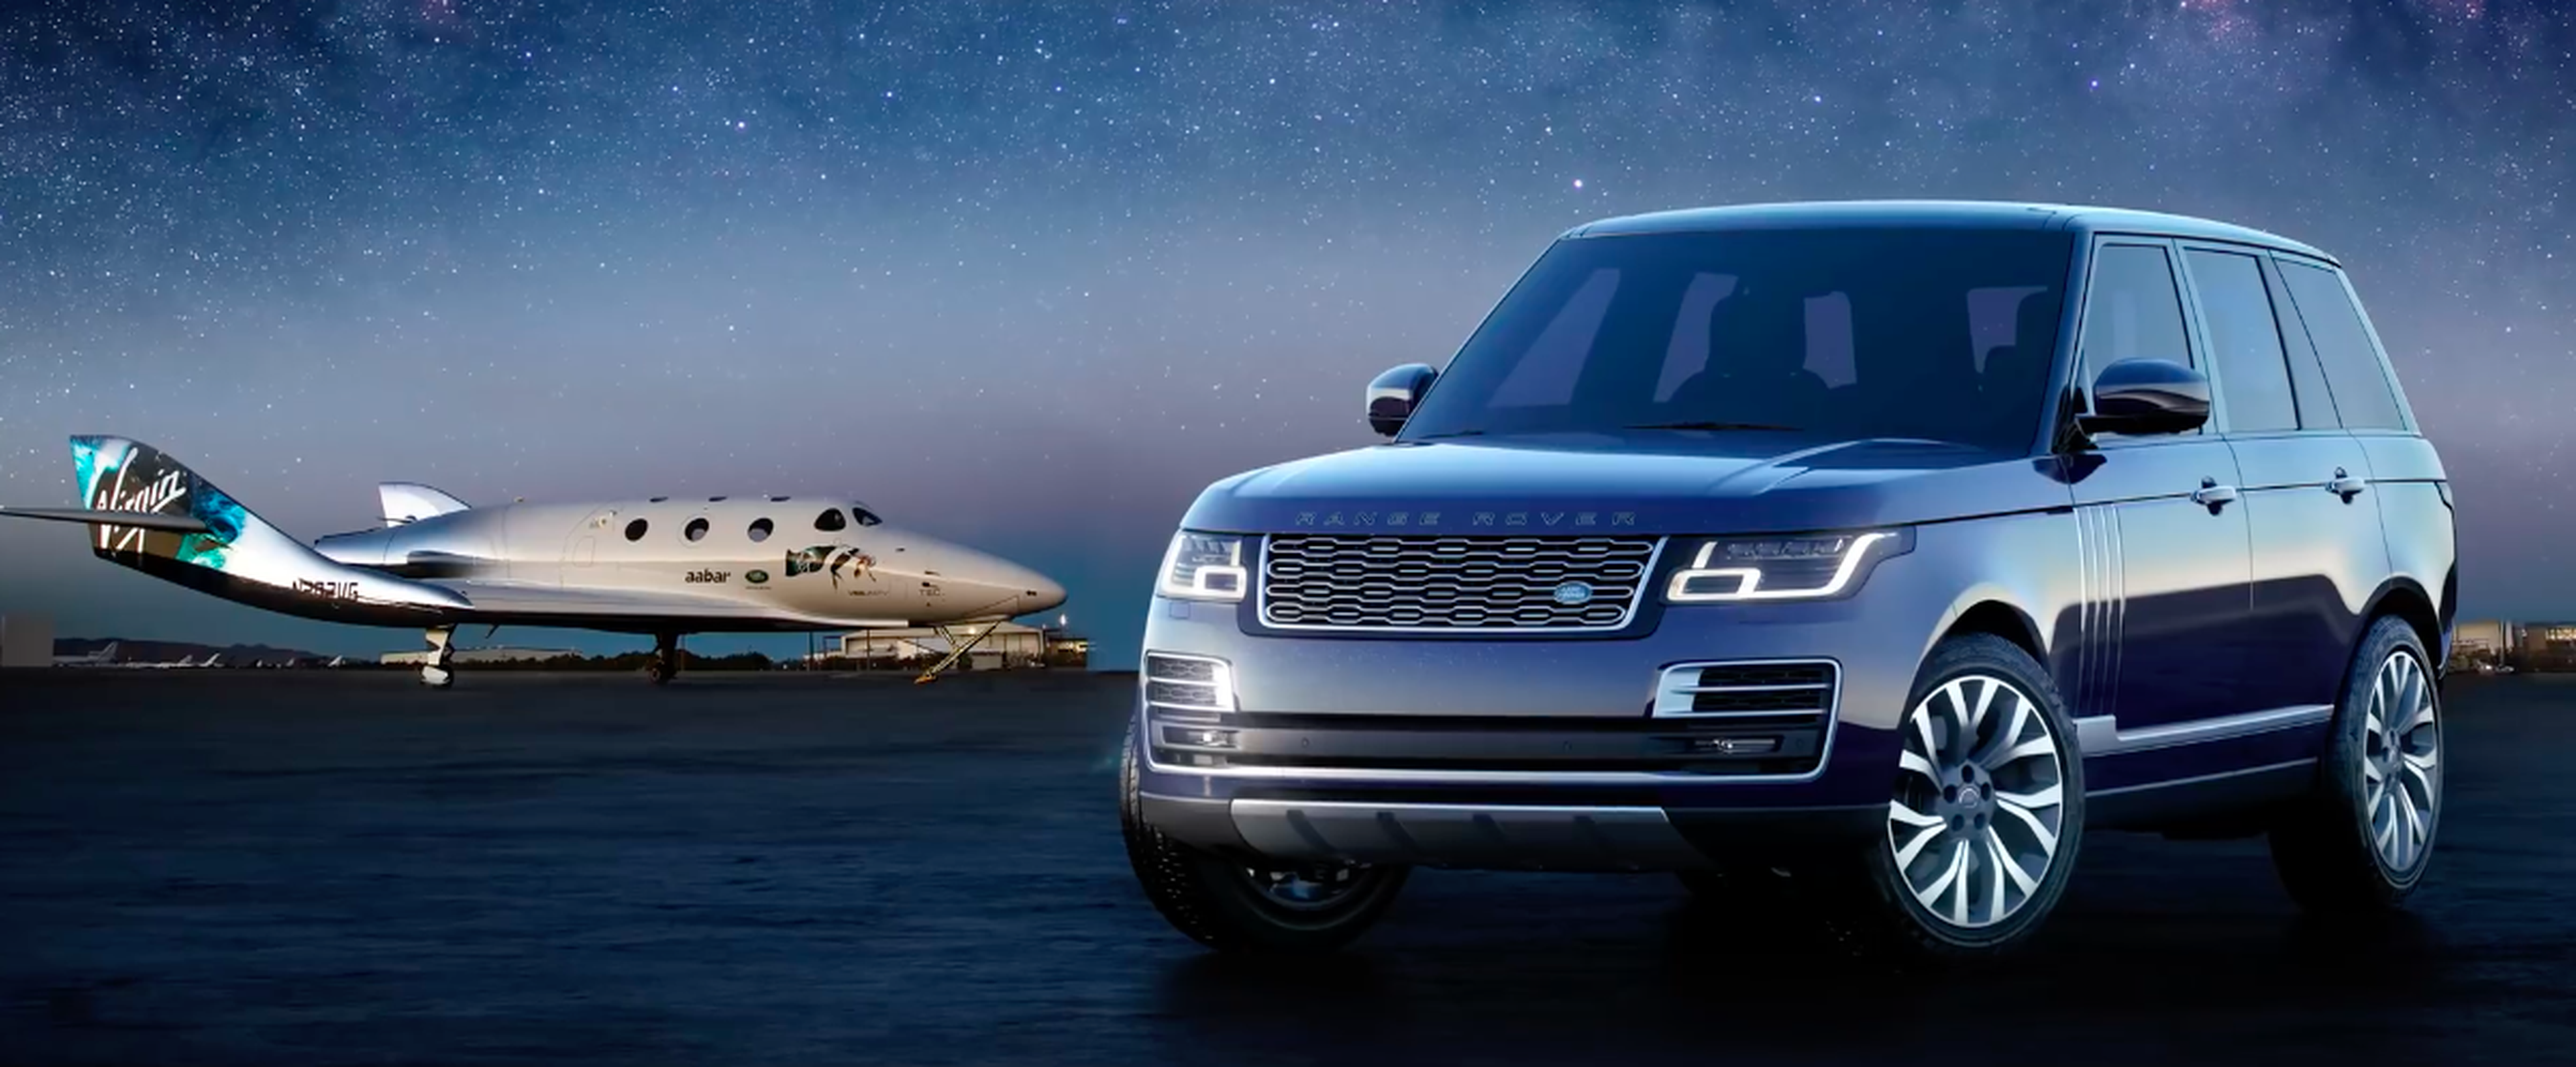 VÍDEO: Así es el Range Rover edición Astronauta... sí, no es una broma